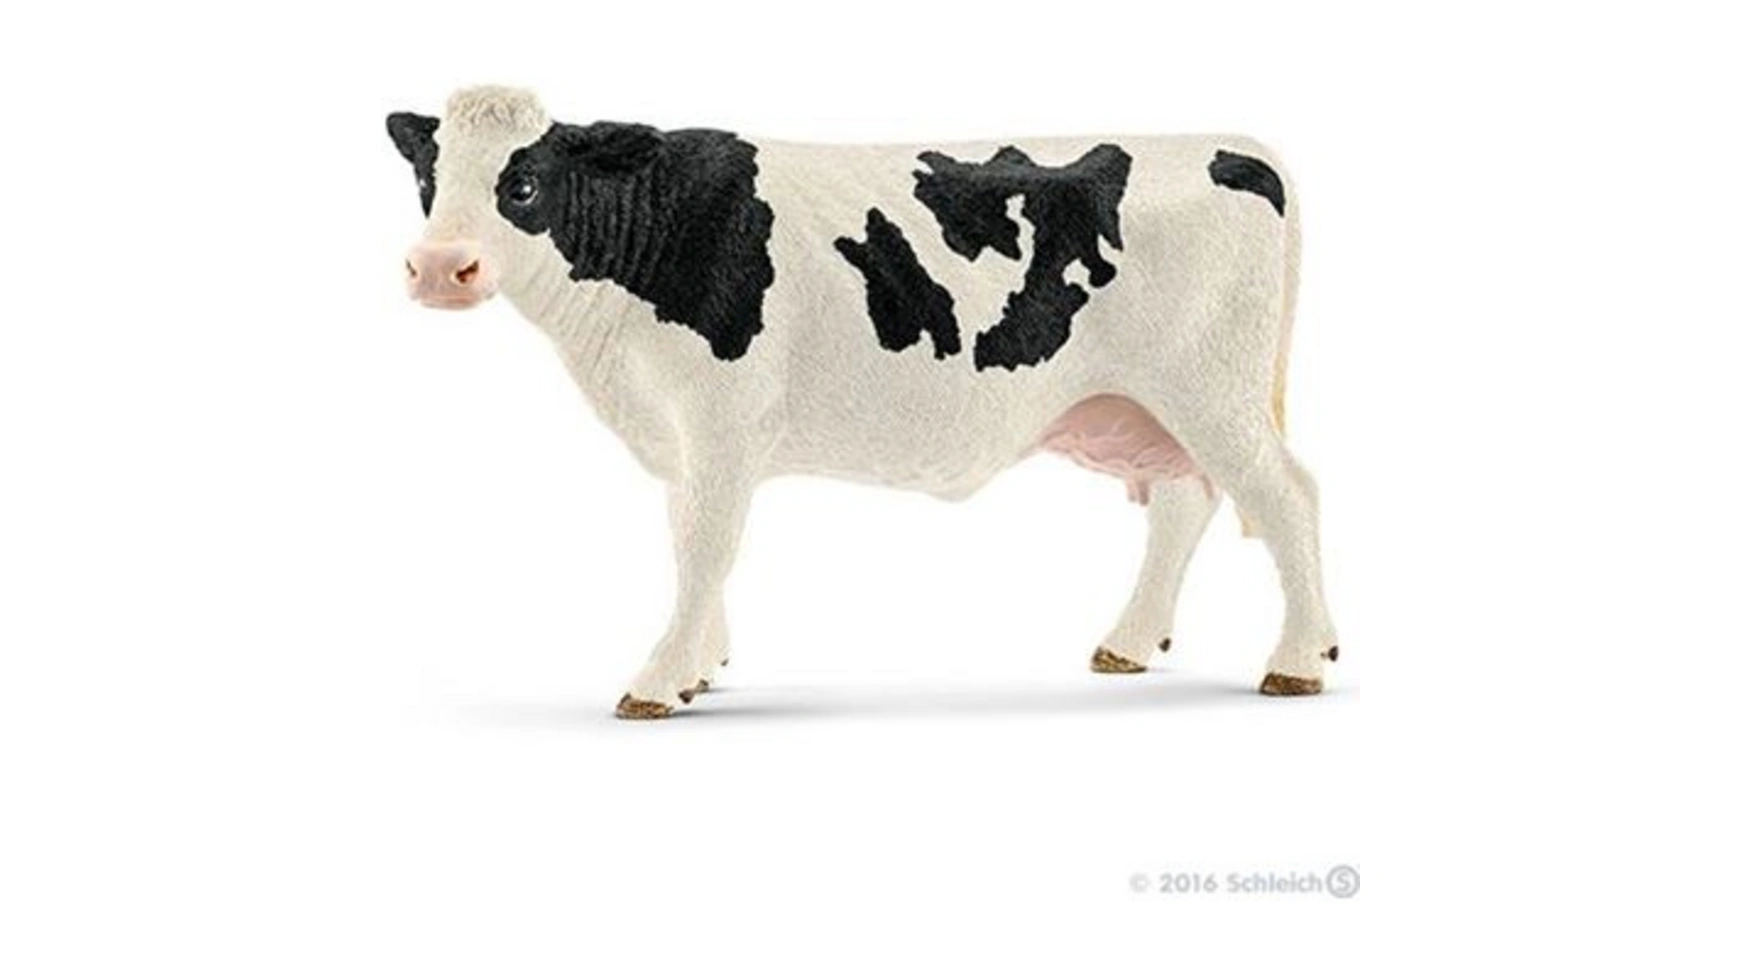 Schleich Farm World Сельскохозяйственные животные Коровы голштинской породы коровы и телята